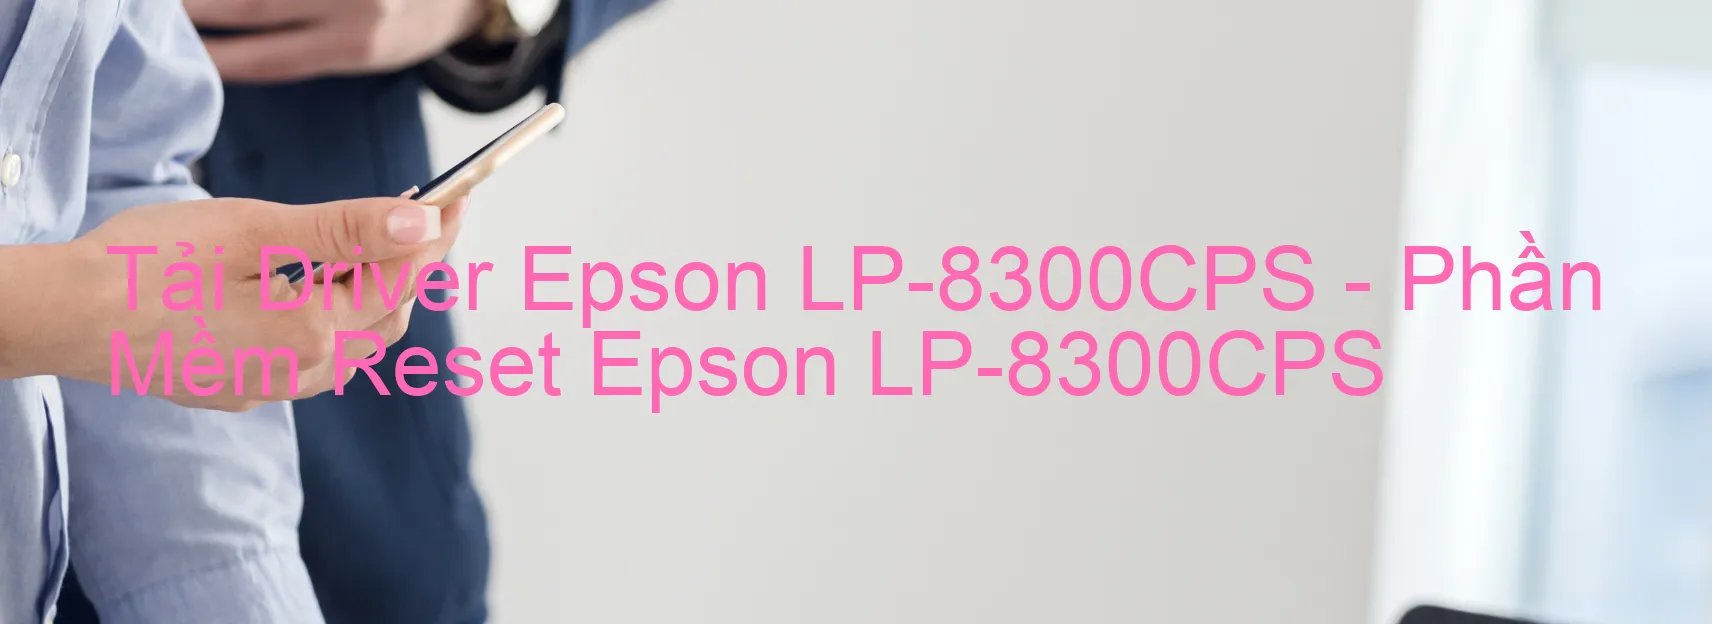 Driver Epson LP-8300CPS, Phần Mềm Reset Epson LP-8300CPS